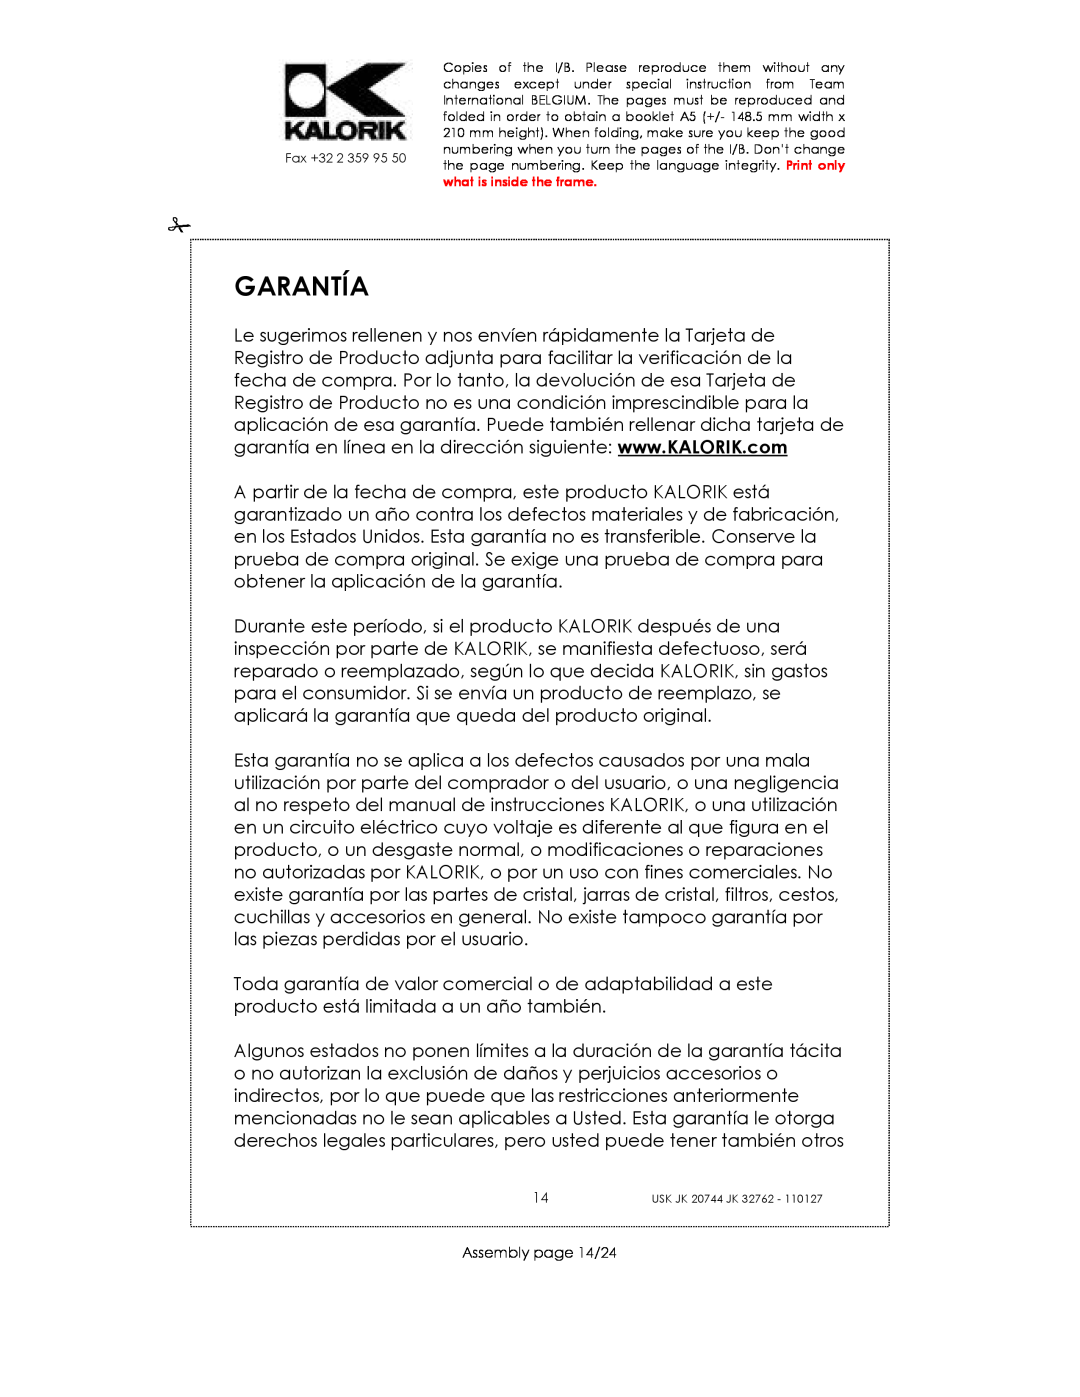 Kalorik USK JK 32762, USK JK 20744 manual Garantía, Assembly page 14/24 